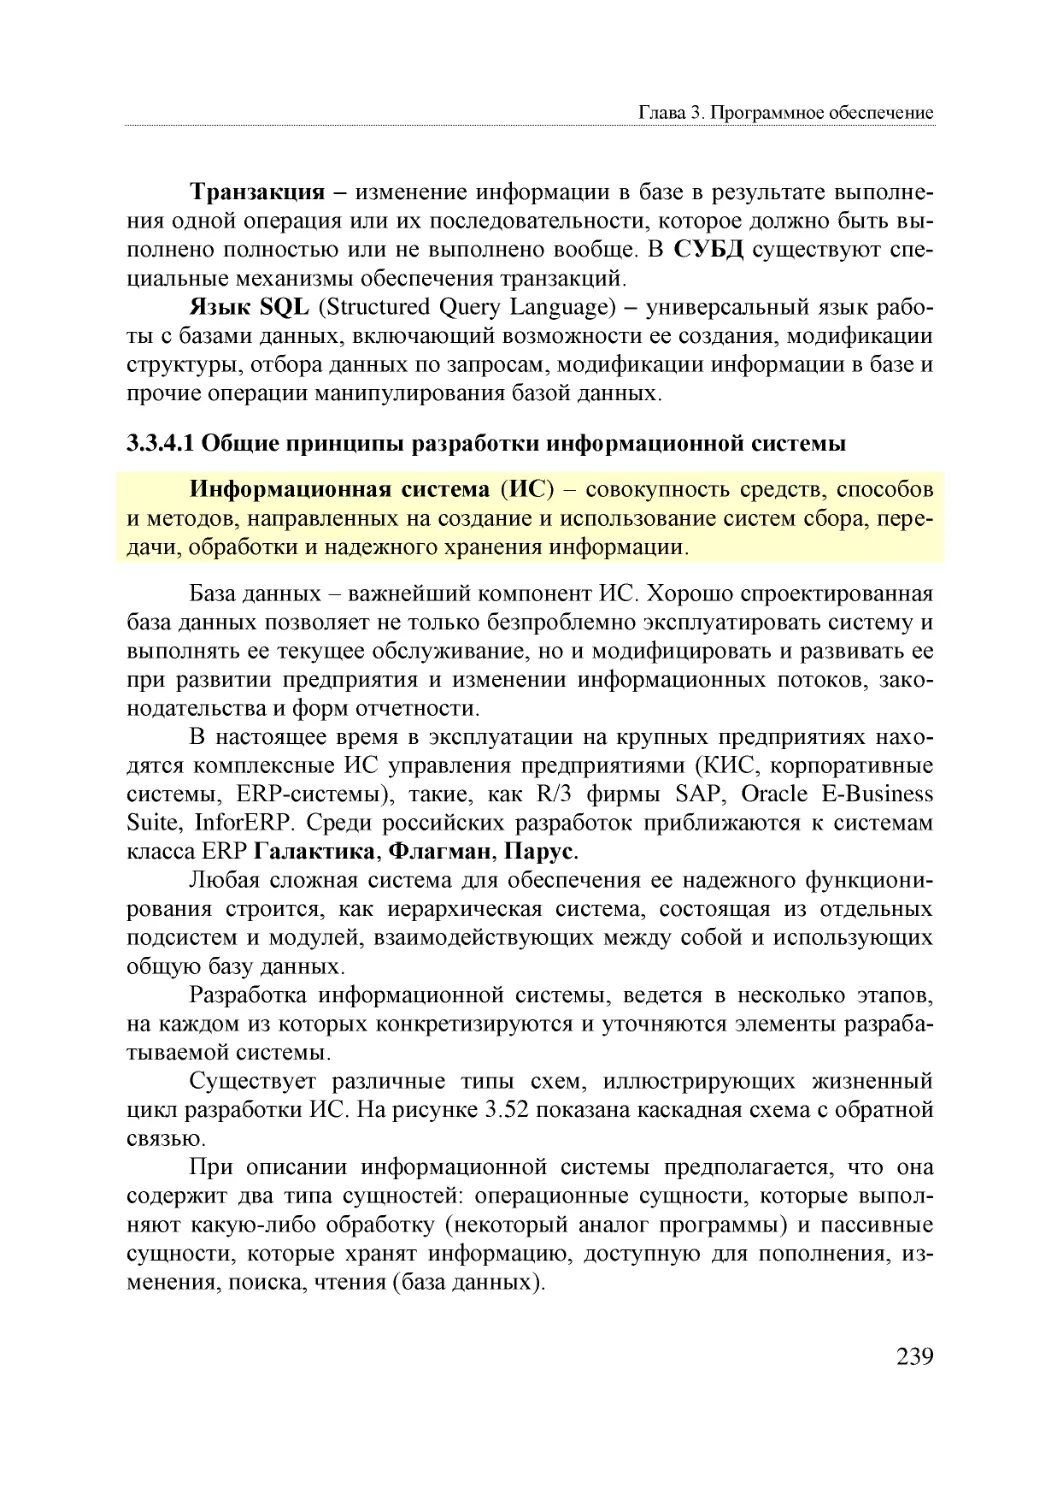 Informatika_Uchebnik_dlya_vuzov_2010 239